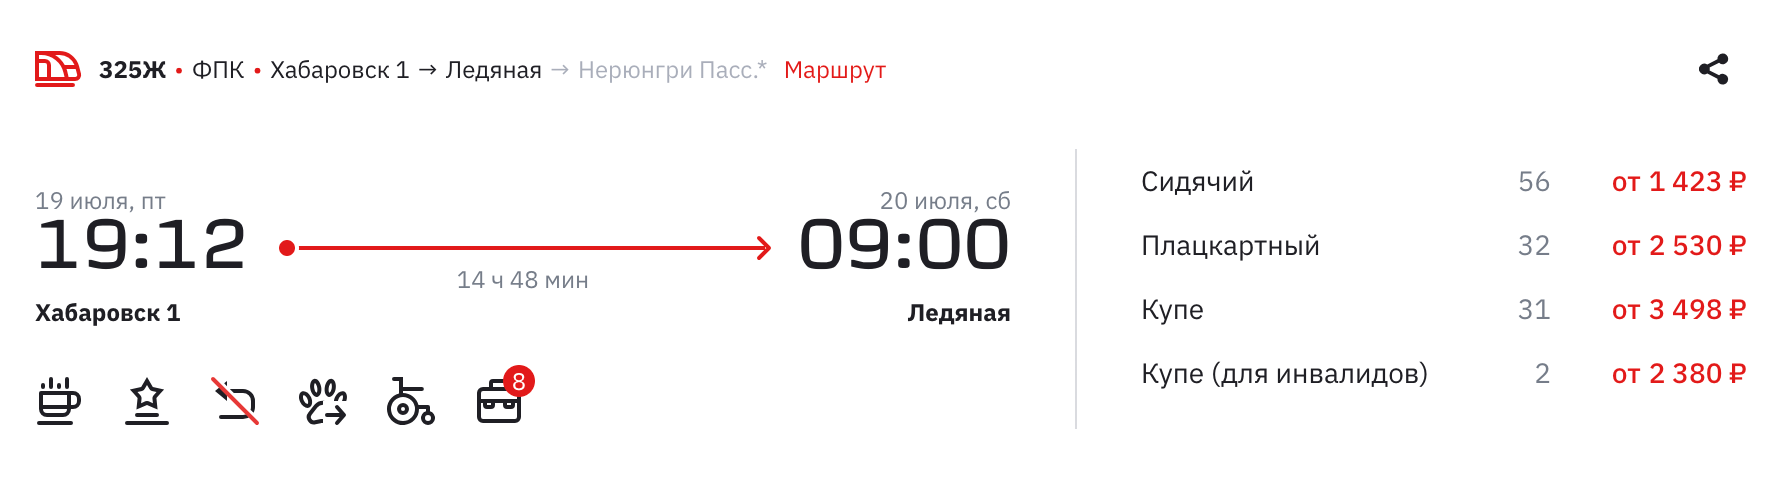 Поезд № 325Ж, на котором едут в тур «Просто космос», отправляется в 19:12 из Хабаровска и прибывает в 09:00 на станцию Ледяная. Источник: ticket.rzd.ru